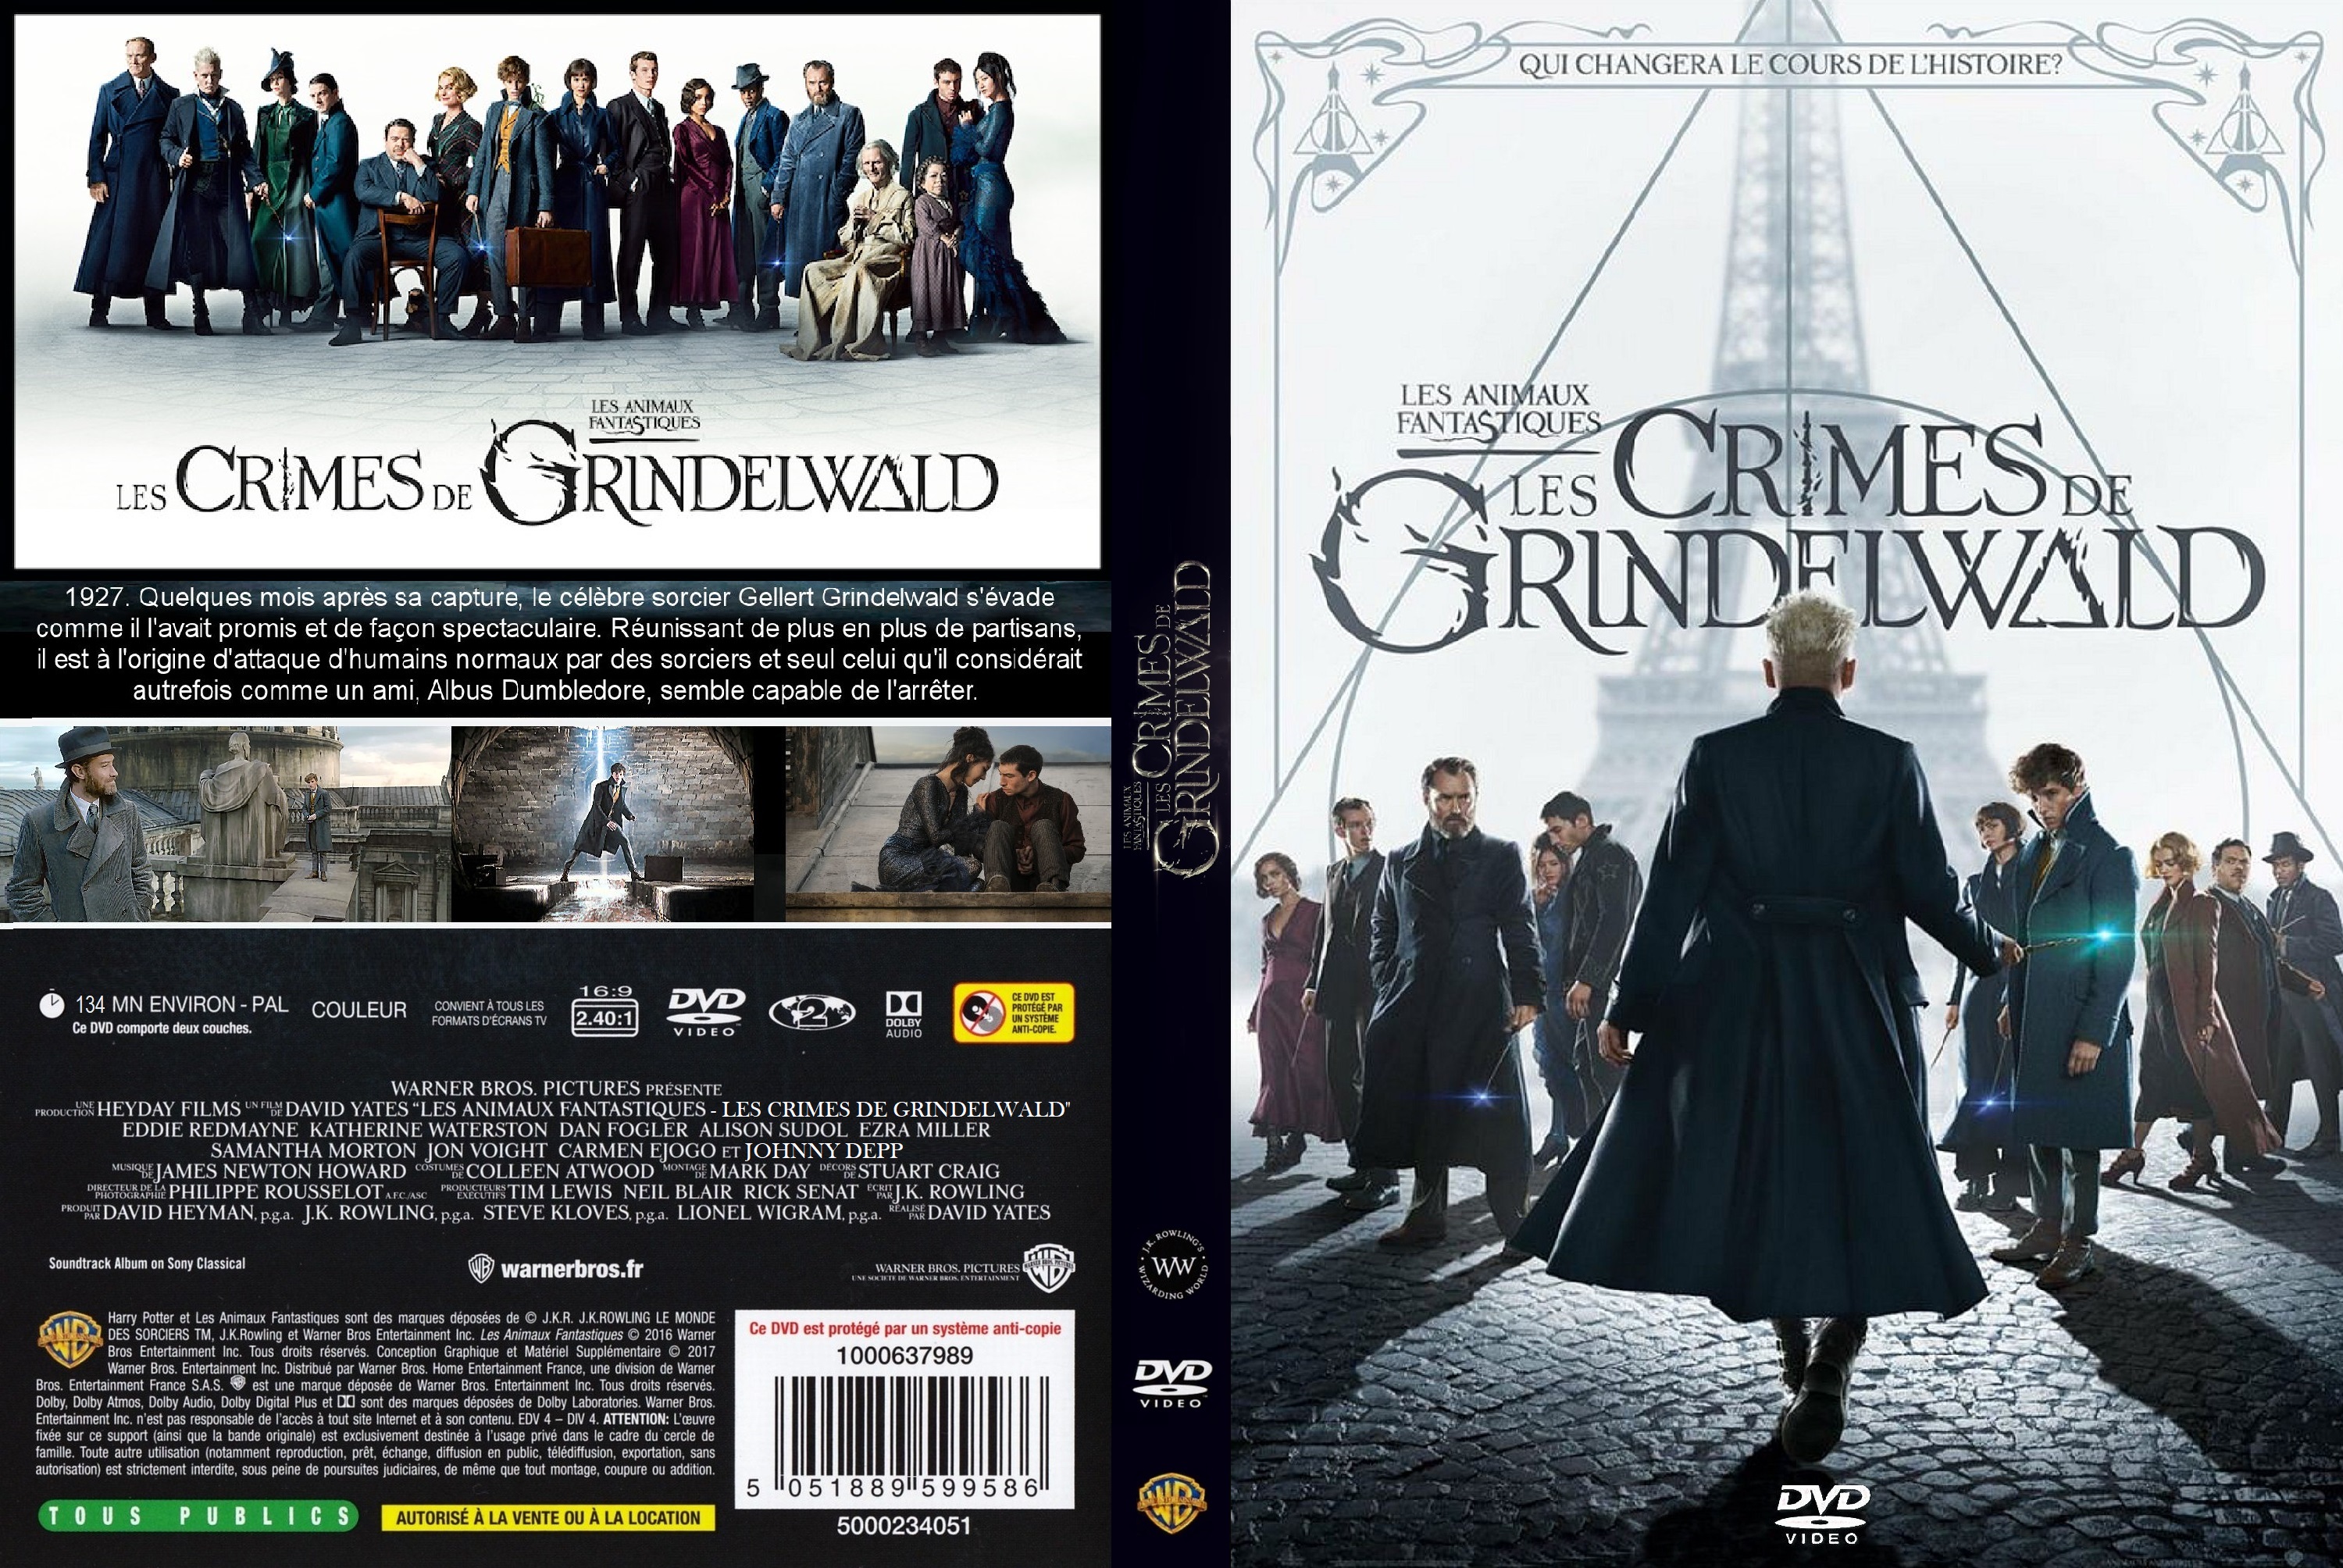 Jaquette DVD Les animaux fantastiques Les crimes de Grindelwald custom